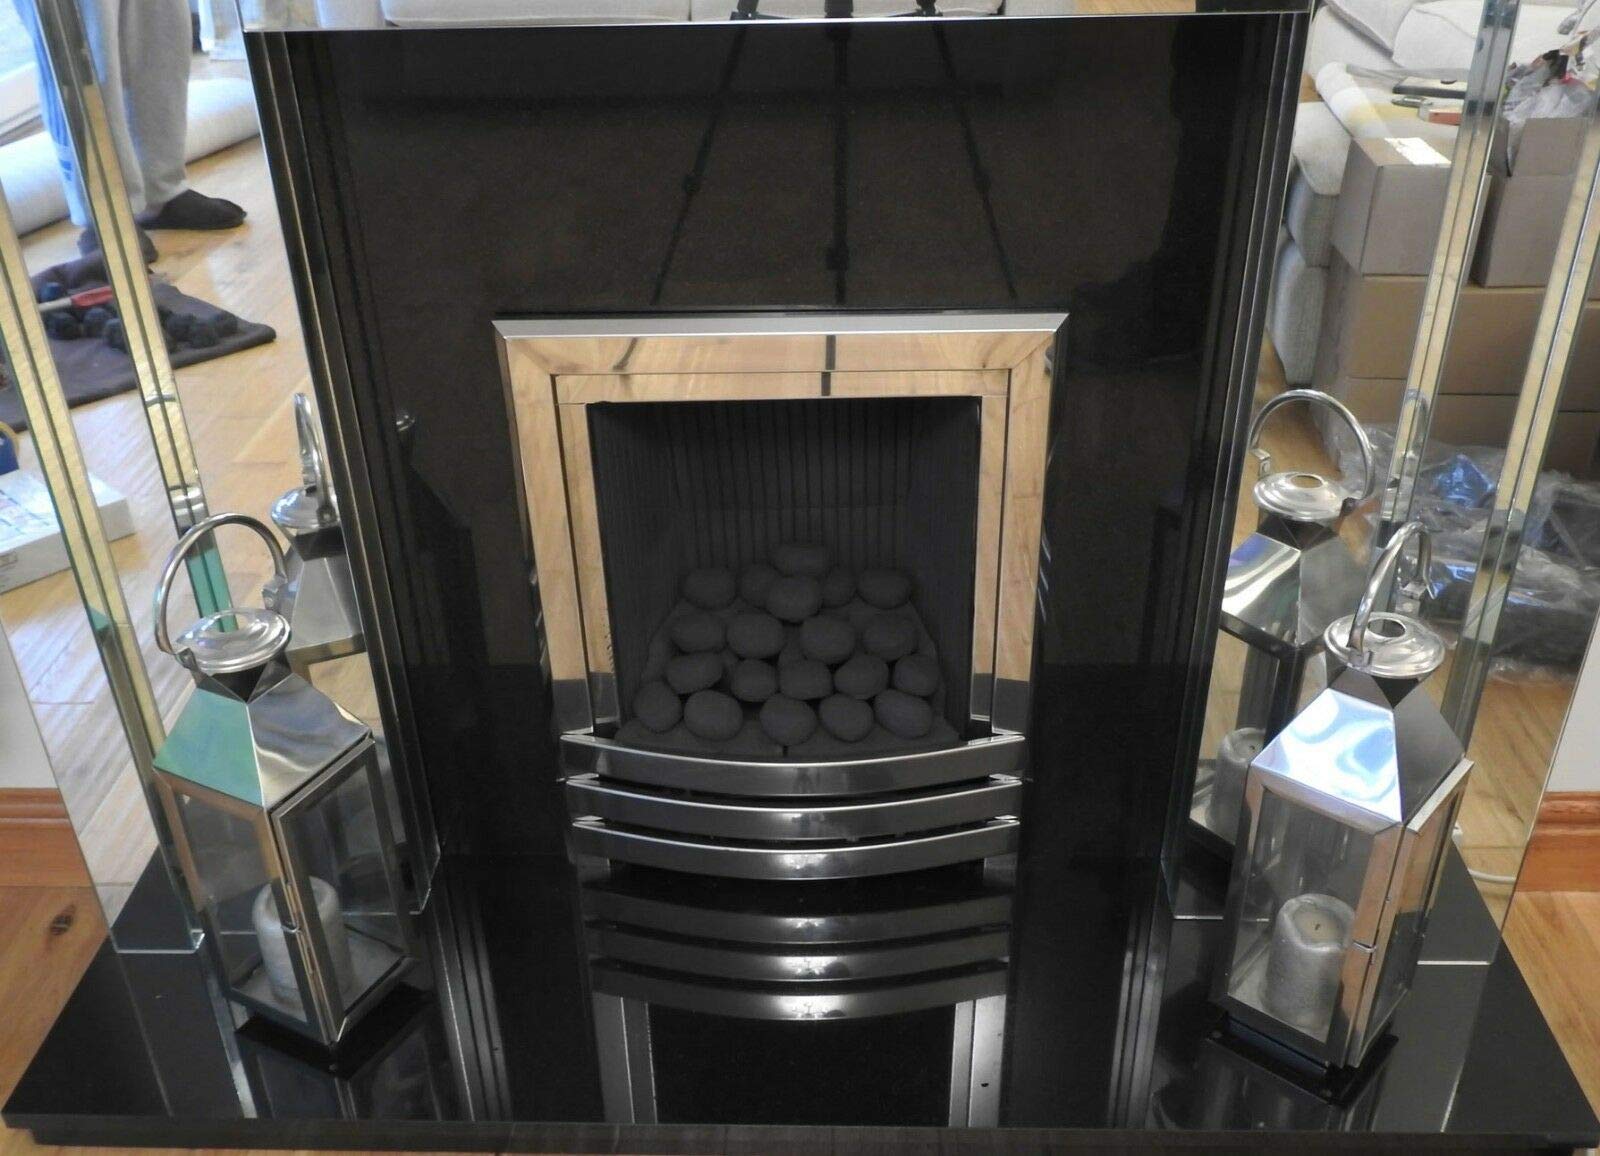 hmleaf HMB 24 Pcs Black Stone-Like Ceramic Fibre Pebbles for Gas fireplaces, Stove, Gas firepit